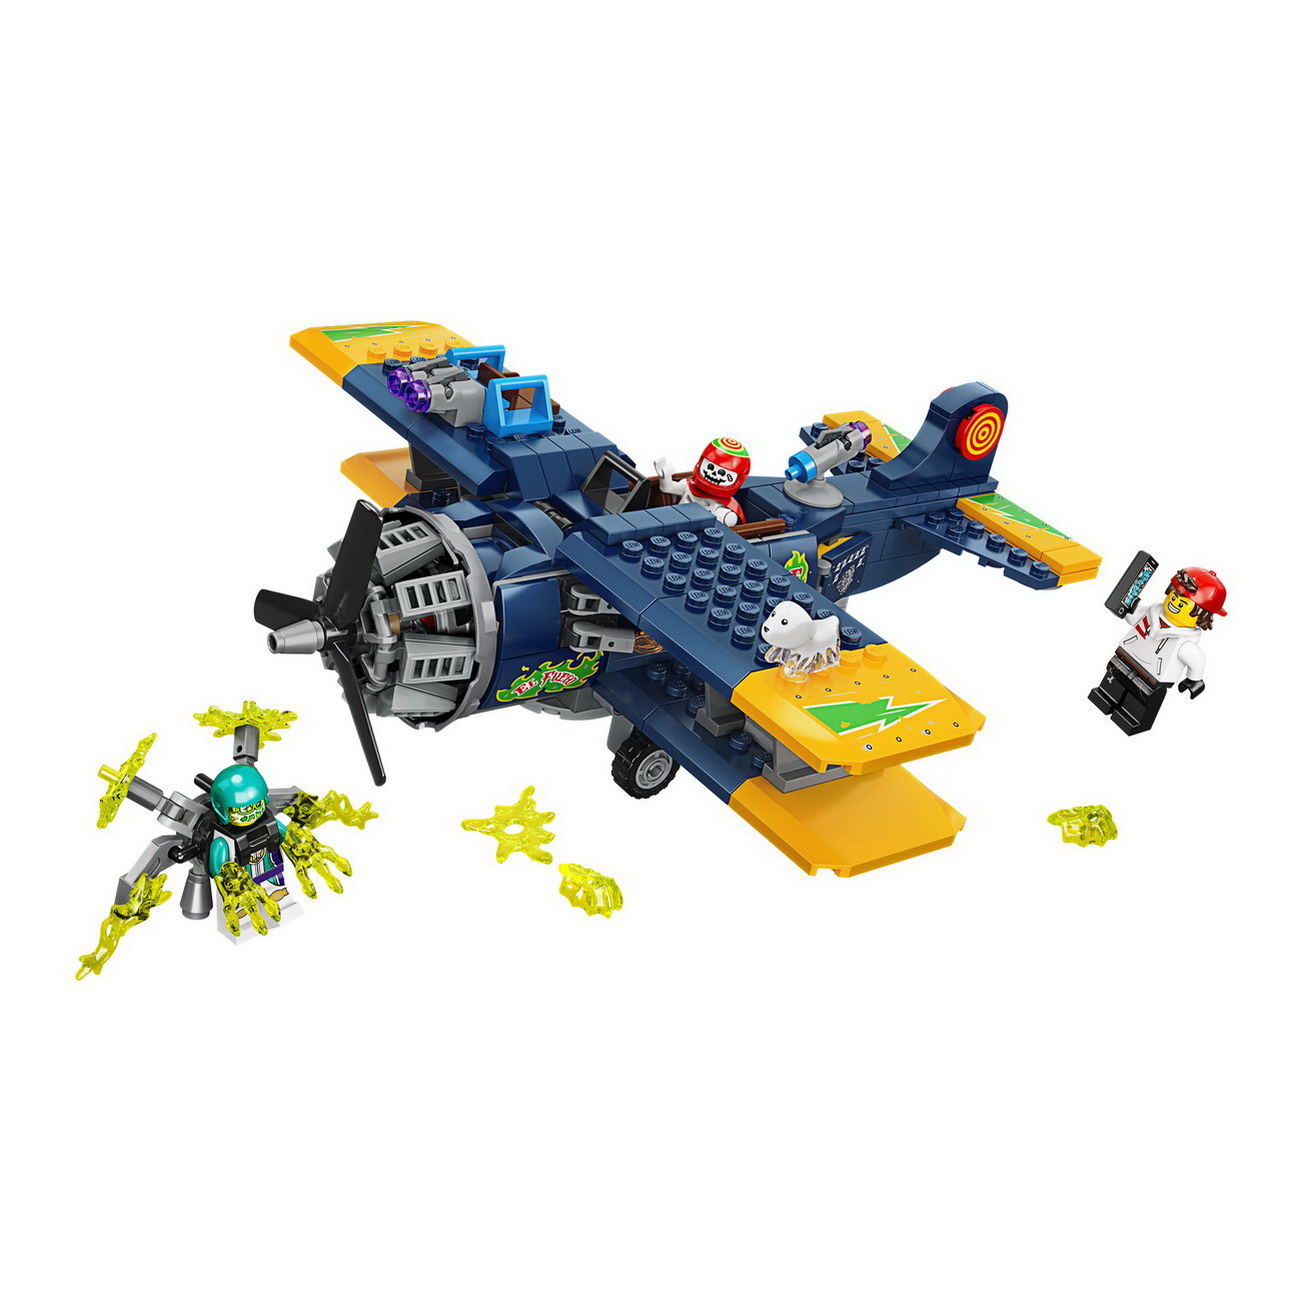 LEGO Hidden Side - El Fuegos Stunt-Flugzeug (70429)